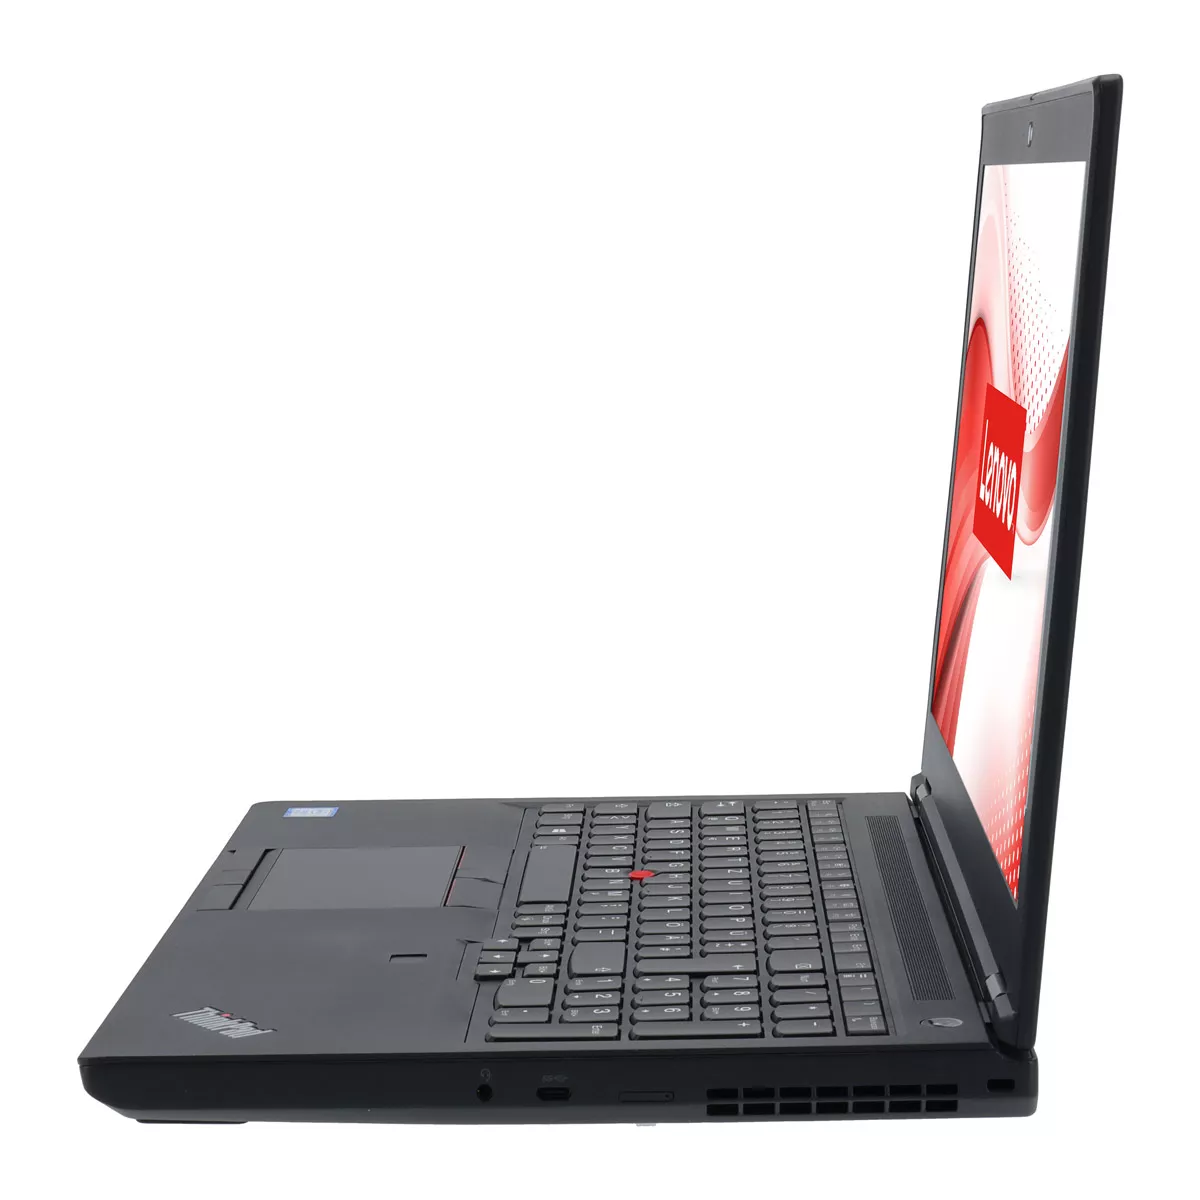 Lenovo ThinkPad P53 Core i7 9850H nVidia Quadro T2000M 32 GB 500 GB M.2 nVME SSD Webcam B